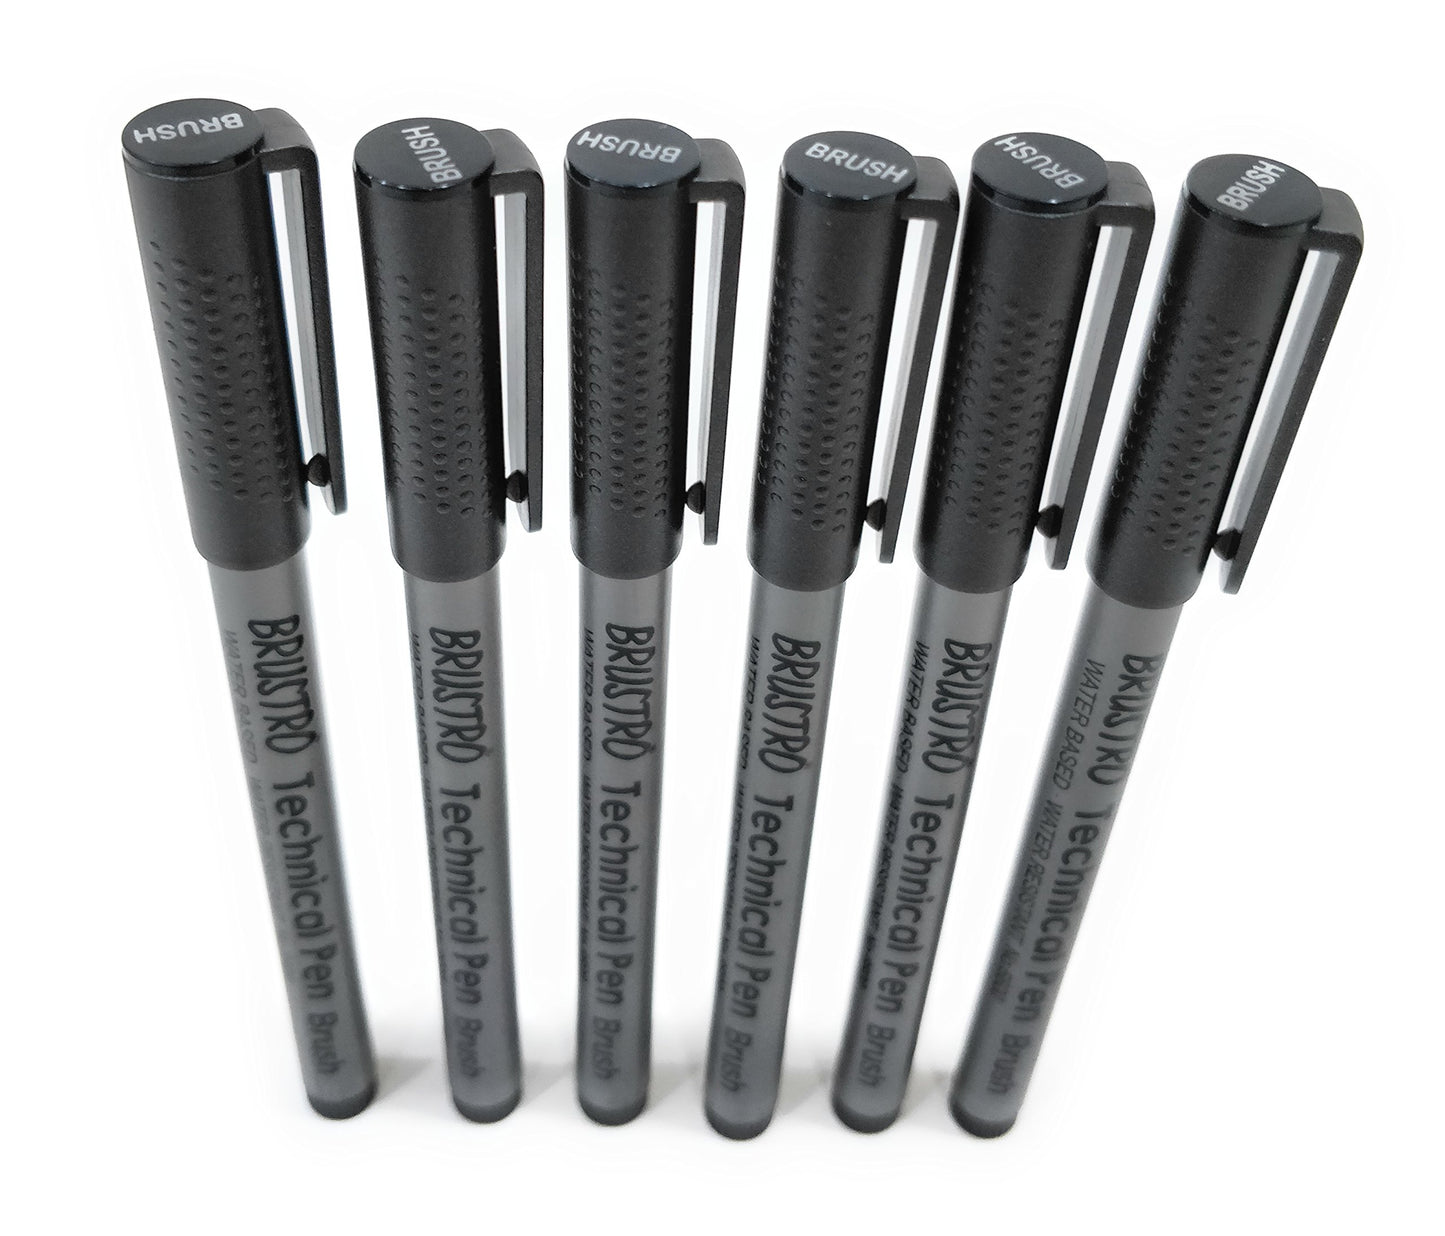 Brustro Technical Pen Black Brush (Pack of 6)